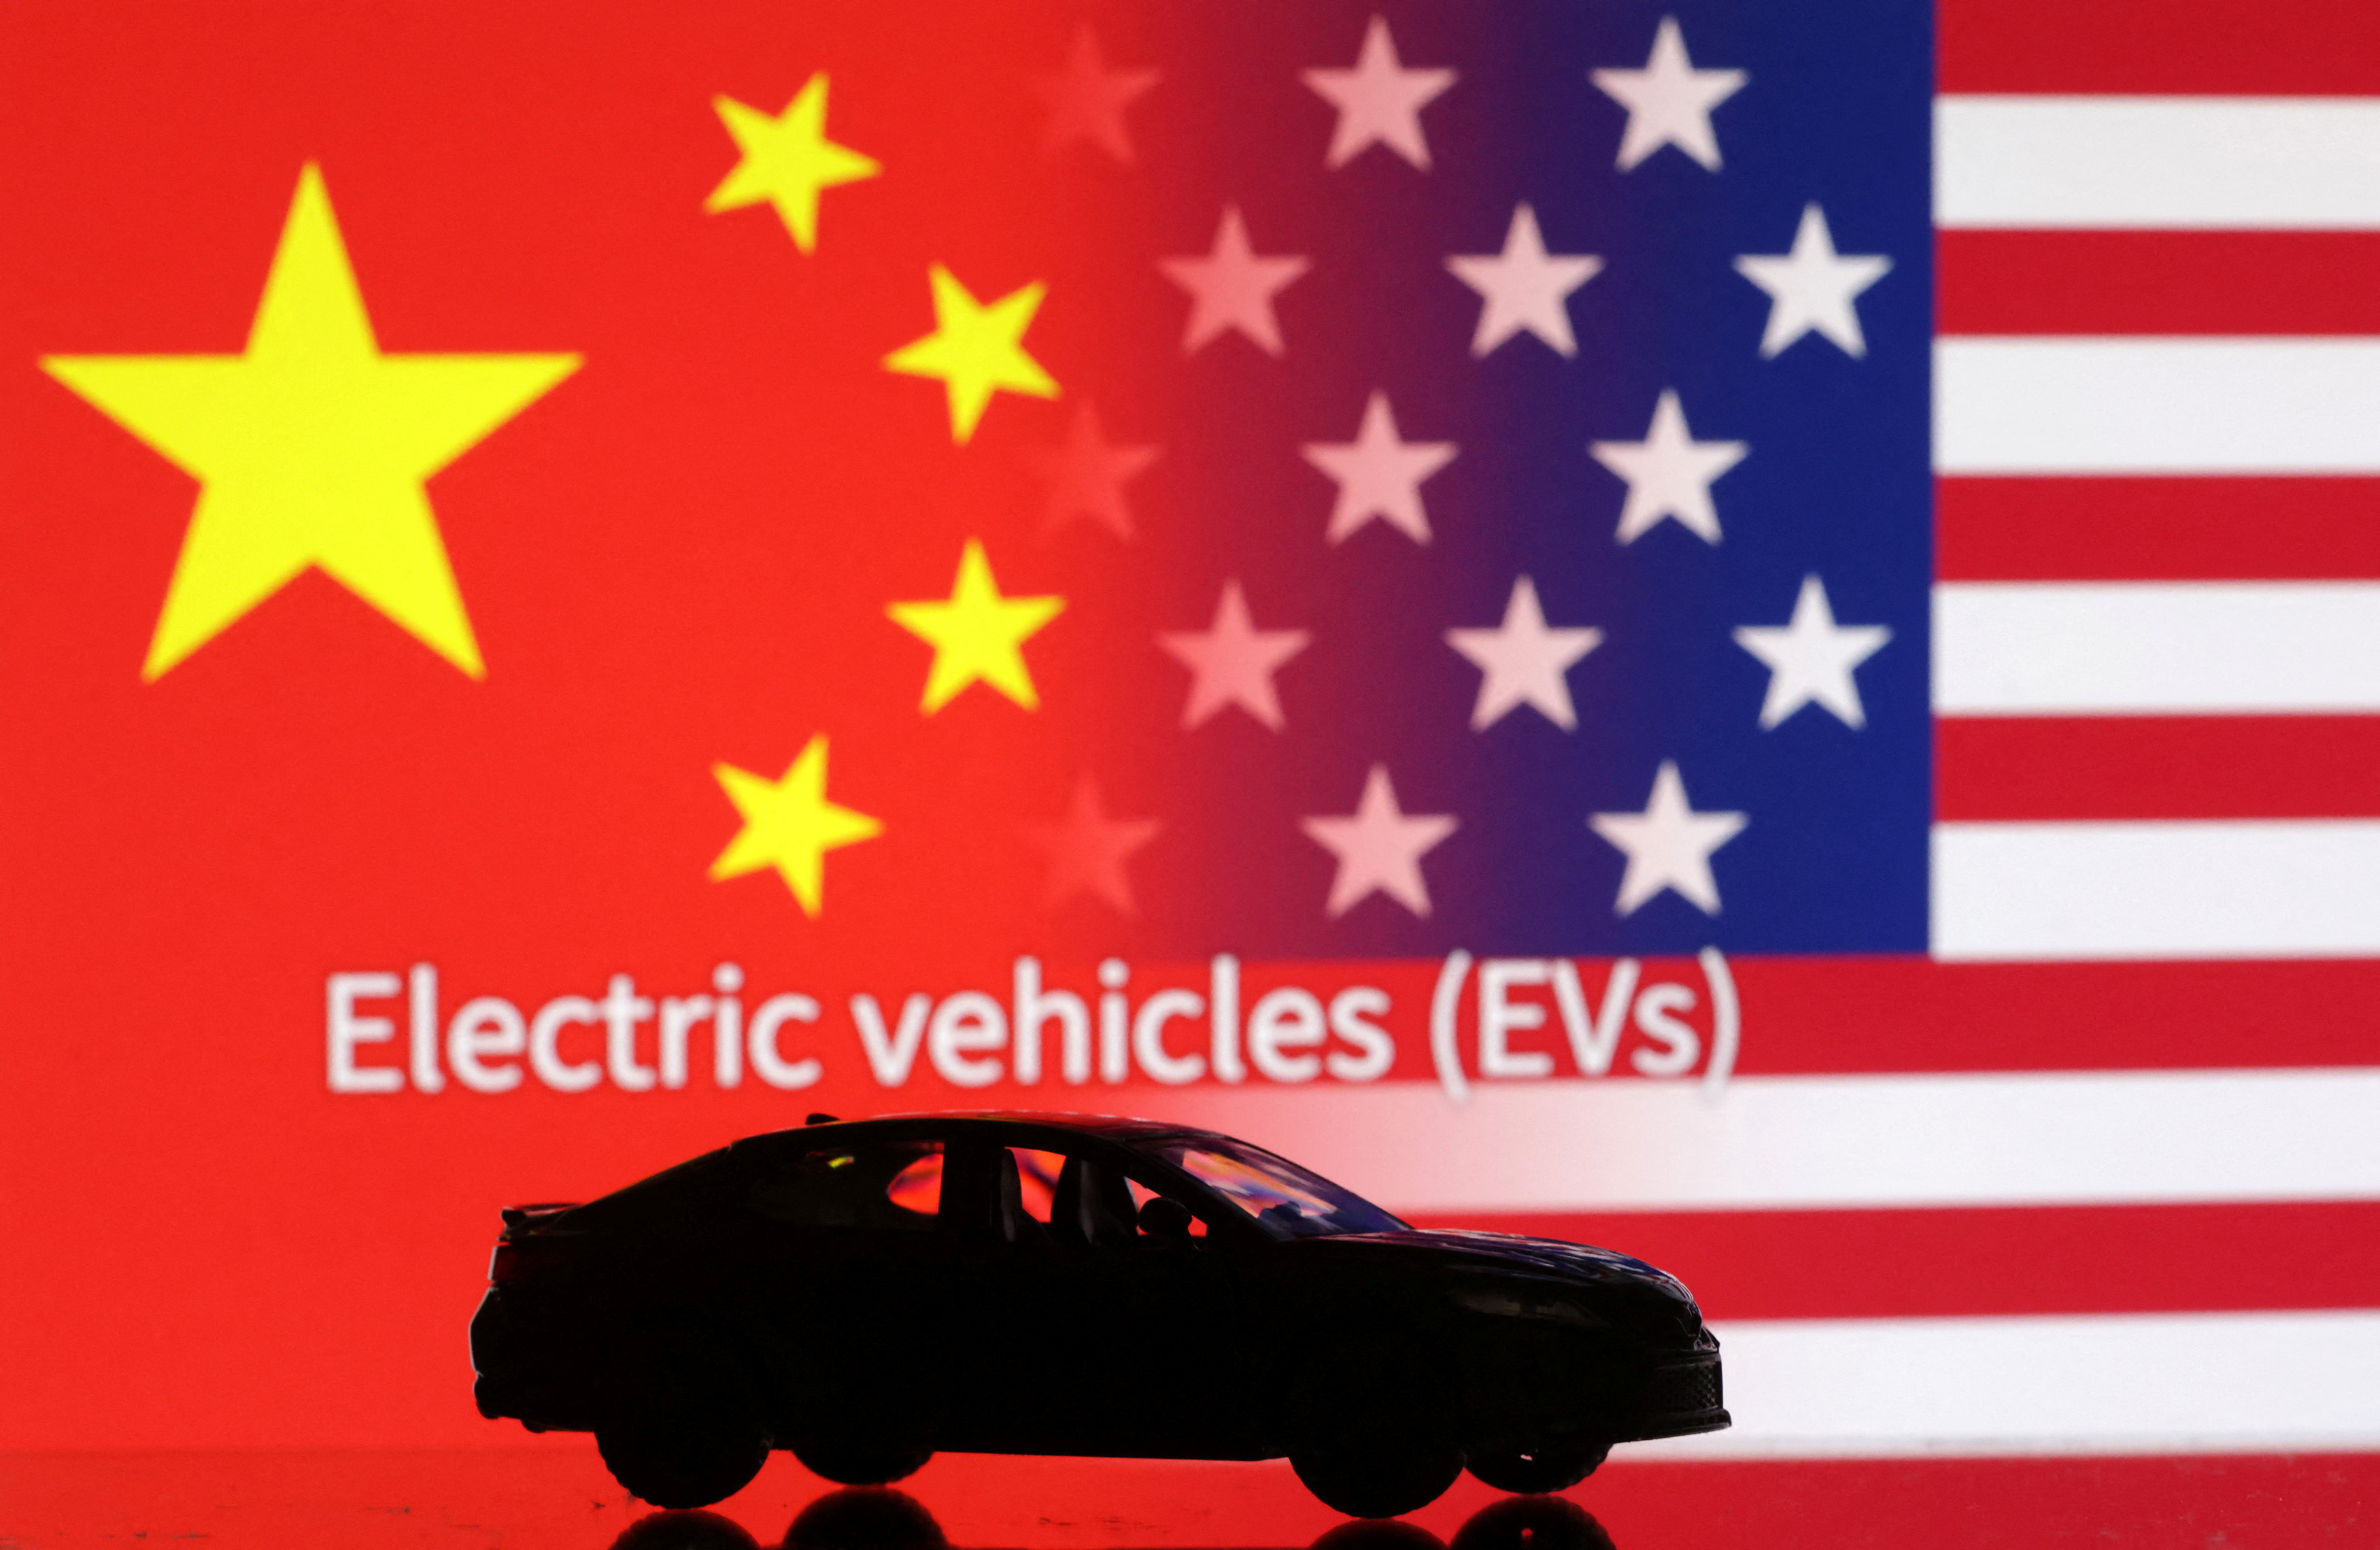 L'illustration montre une voiture miniature, "Véhicules électriques (VE)" mots, drapeaux américains et chinois